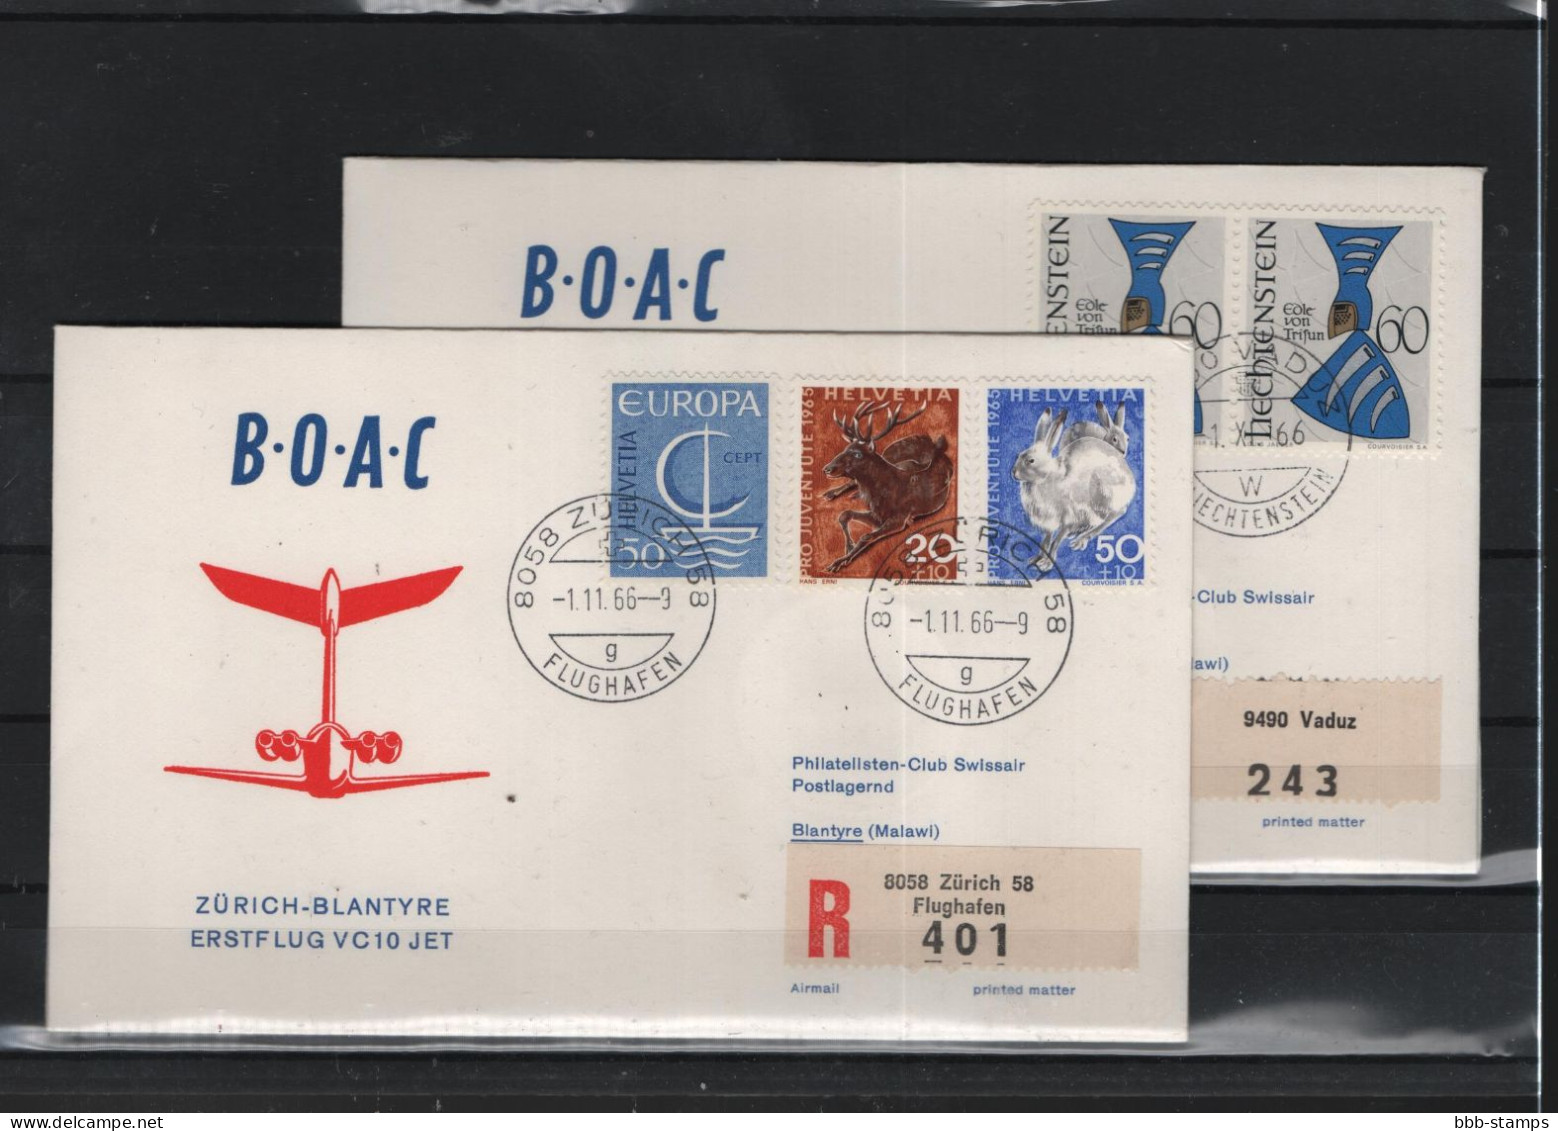 Schweiz Luftpost FFC BOAC 1.11.1966 Zürich - Blantyre Vv - First Flight Covers